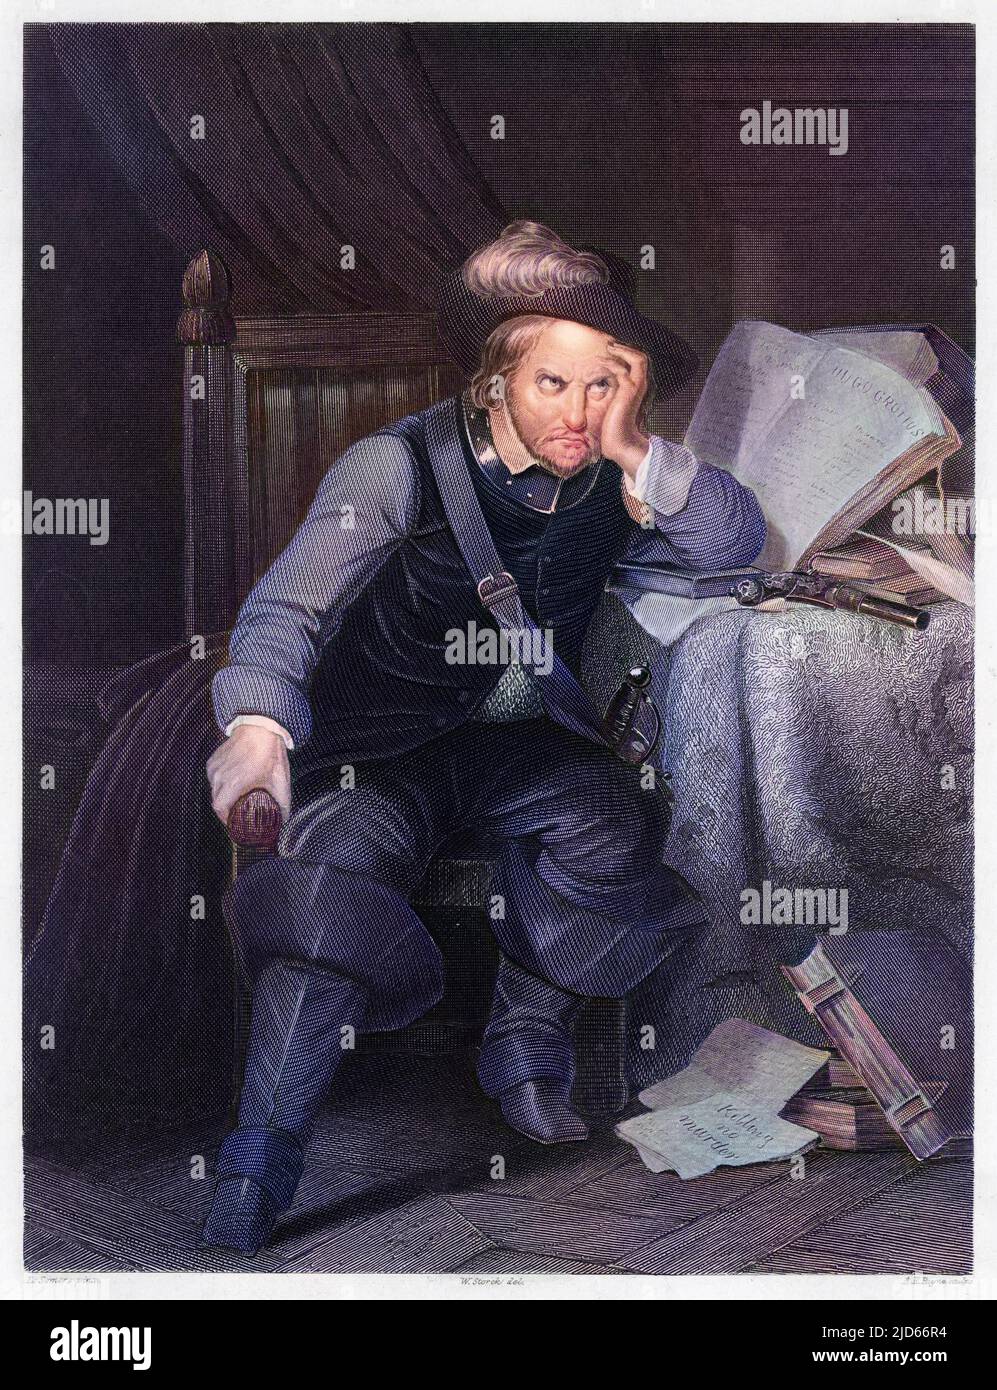 OLIVER CROMWELL (1599 - 1658), soldat et homme d'État anglais, assis à un bureau à l'air très mécontent. Version colorisée de : 10011090 Banque D'Images